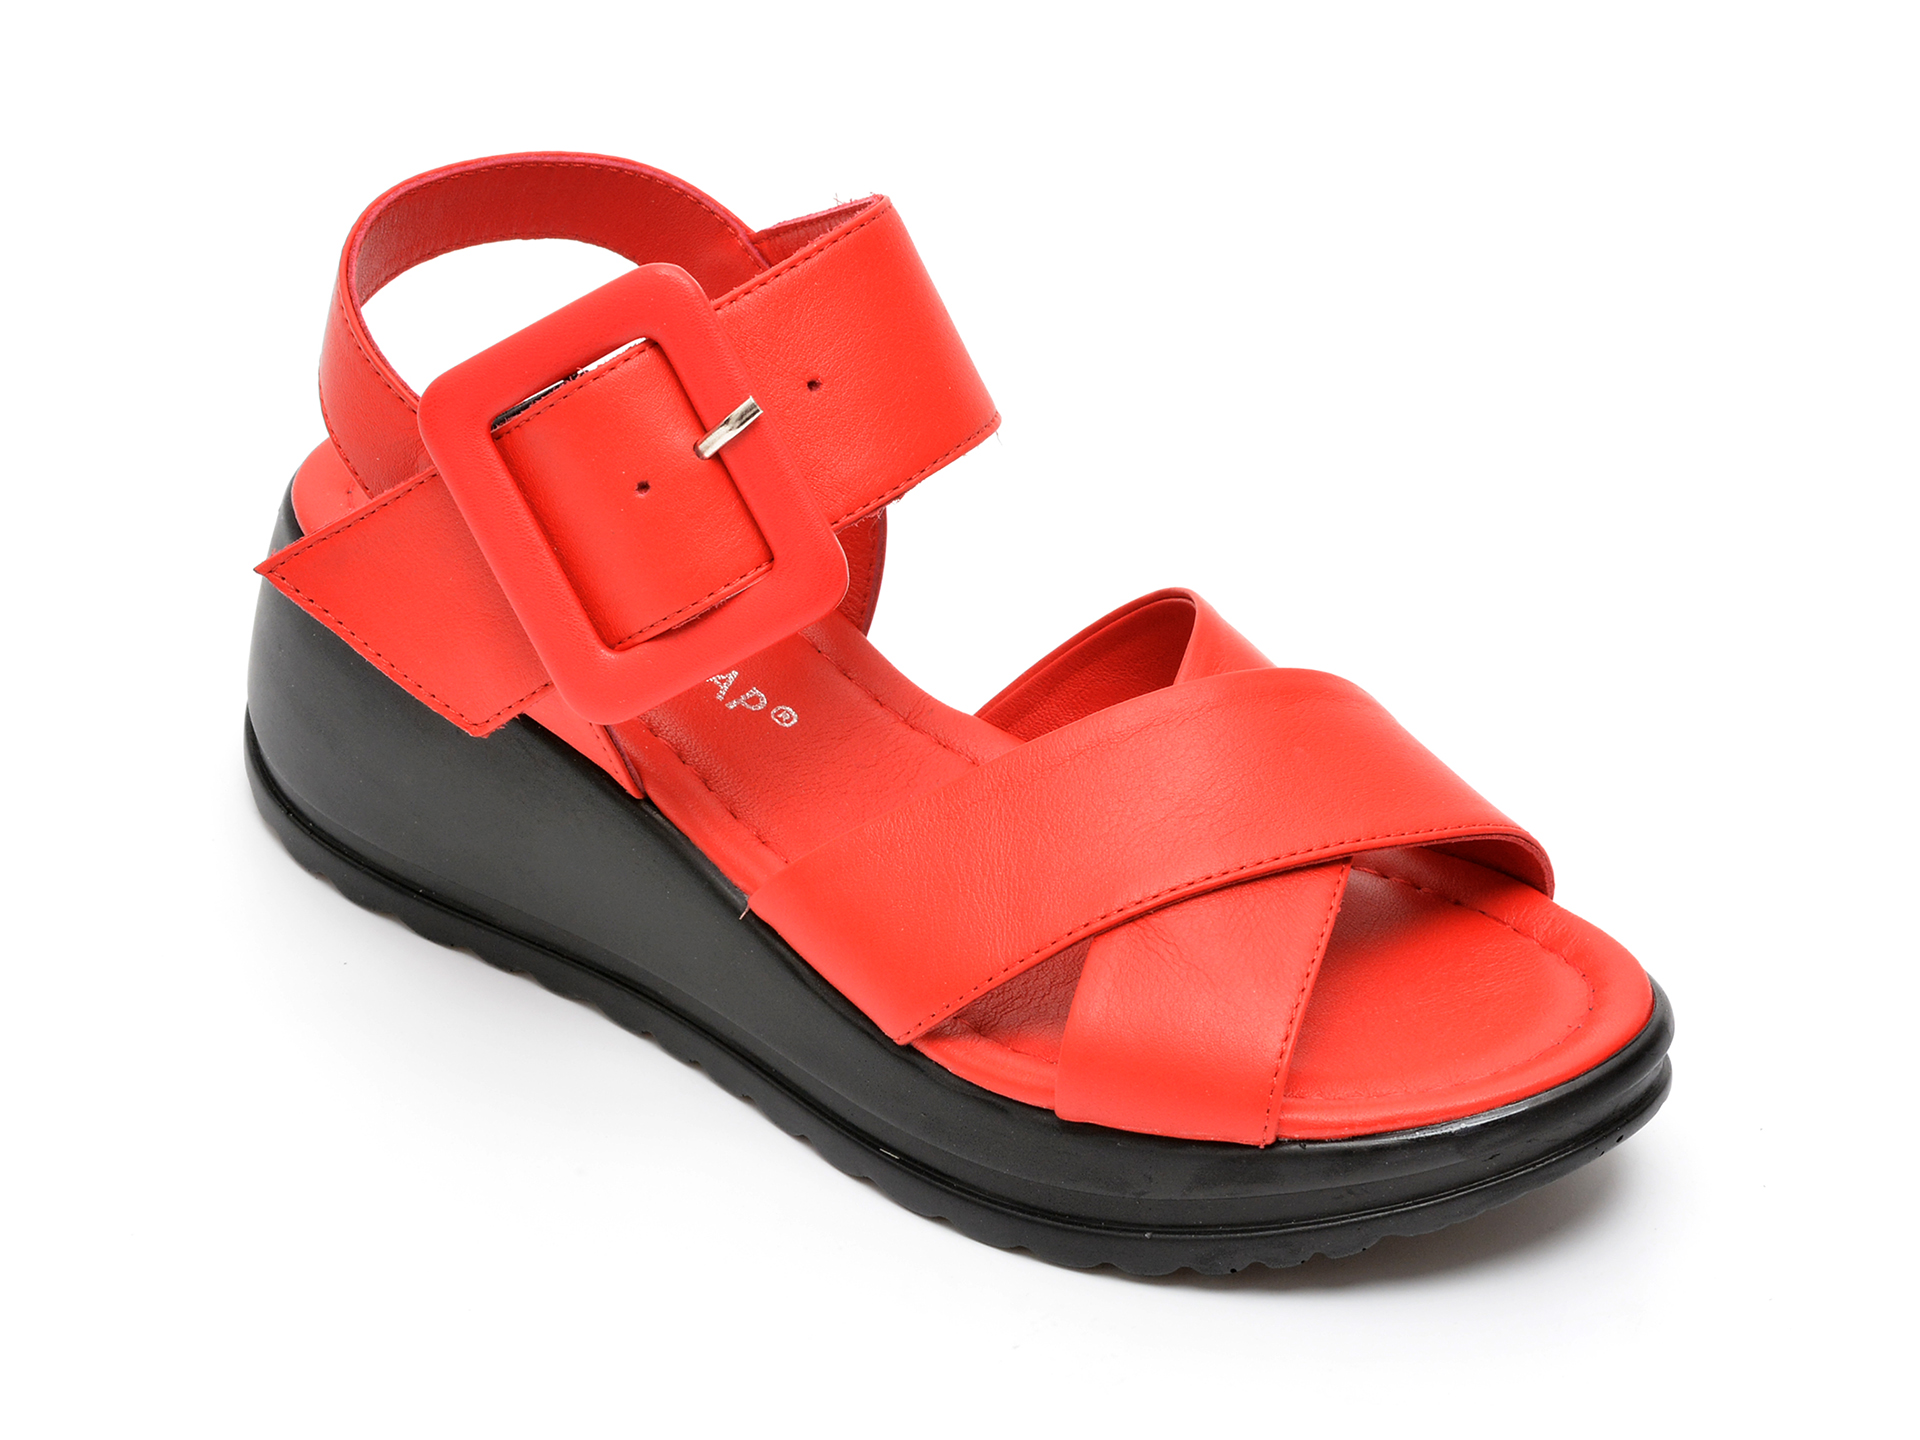 Sandale HK DIVA CLAP rosii, 4214, din piele naturala /femei/sandale imagine noua